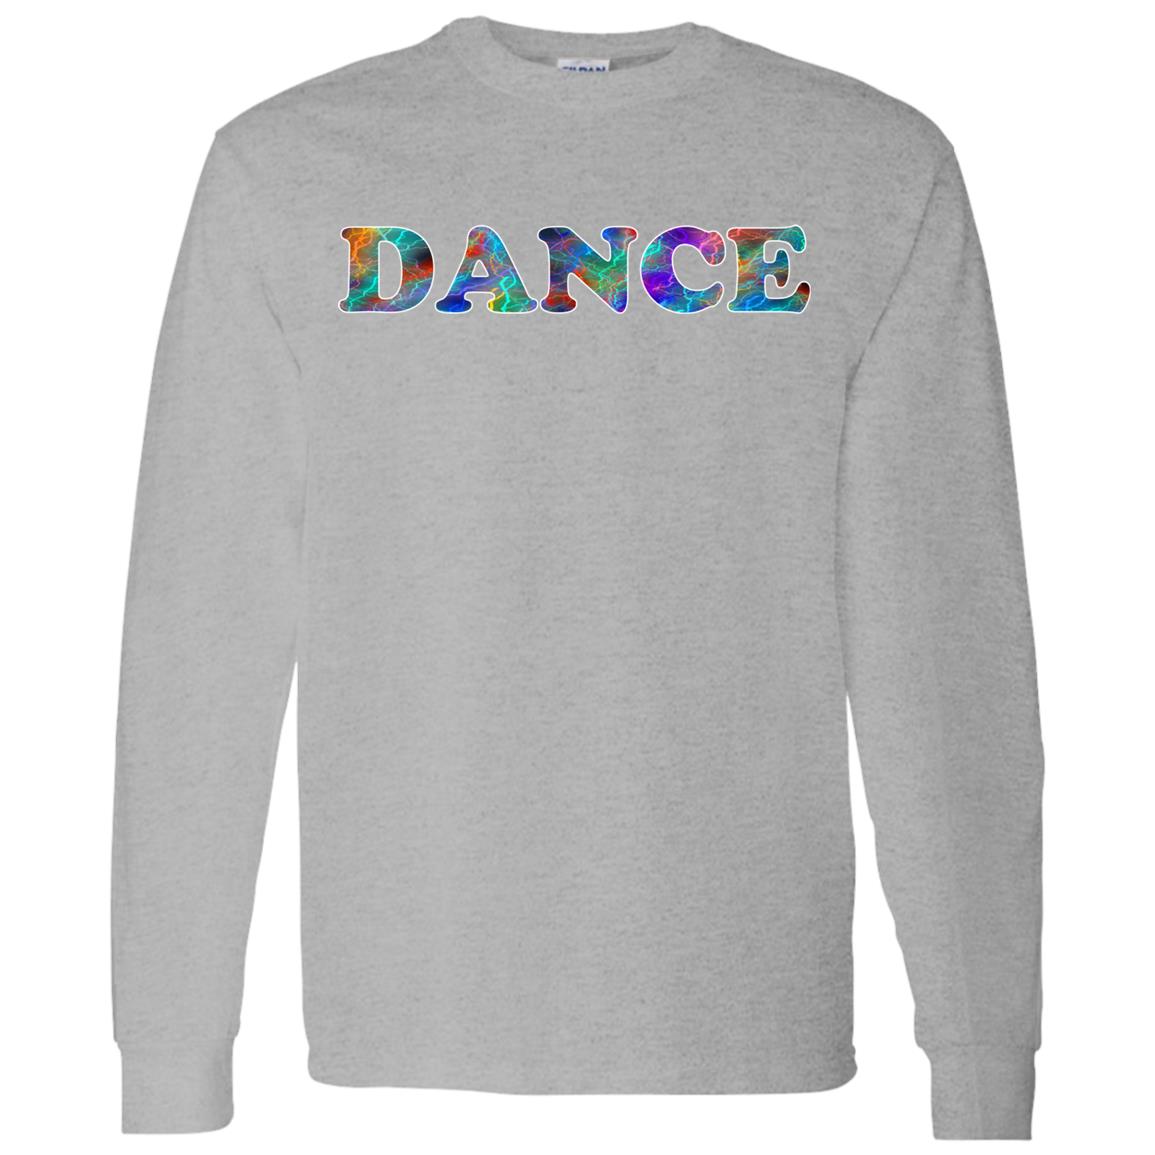 Dance Long Sleeve T-Shirt